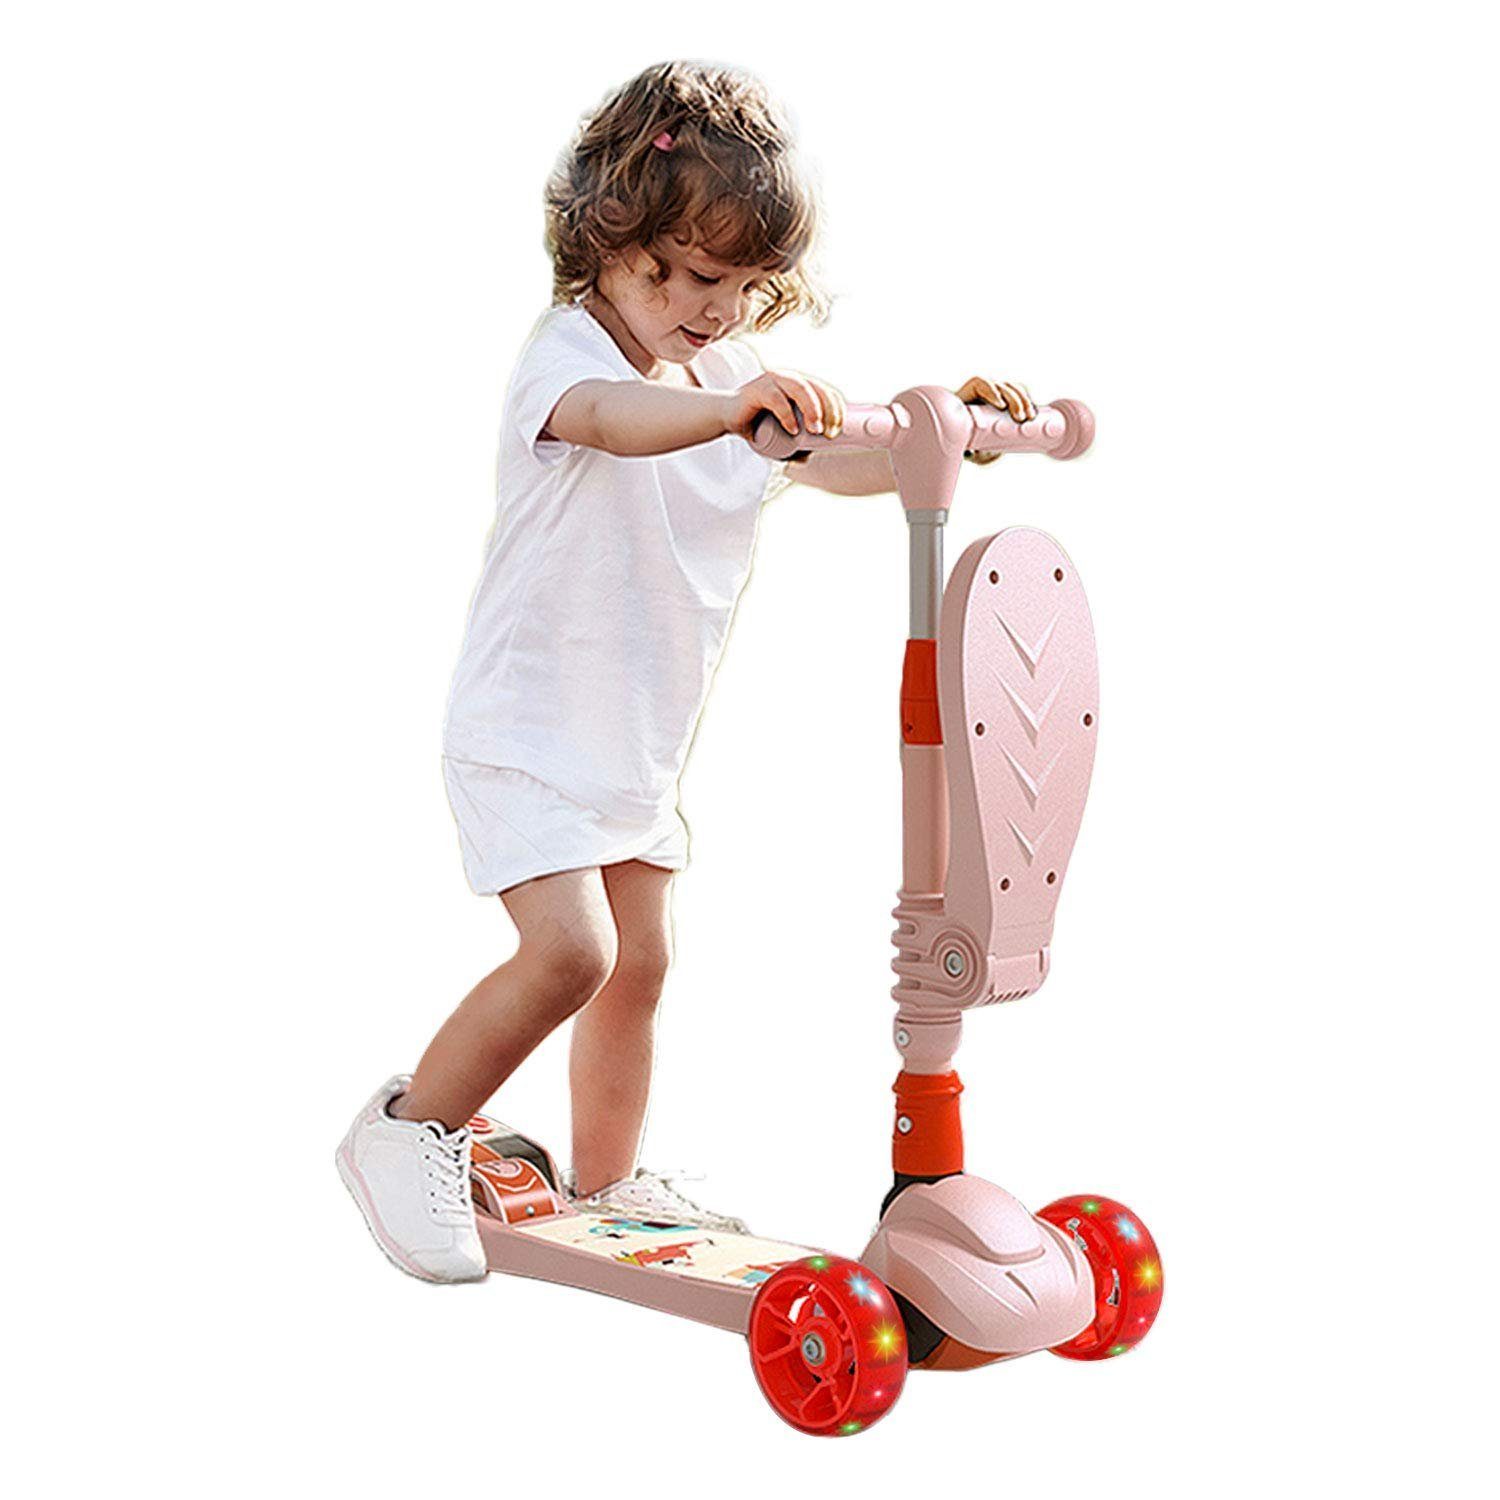 Gebogene kollisionssicherung ，Kinder Scooter mit LED große Räder für Kinder,Scooter 3 Räder Verstellbare,höheverstellbarem Schwerkraftlenkung Arkmiido Kinderroller mit schutzausrüstung